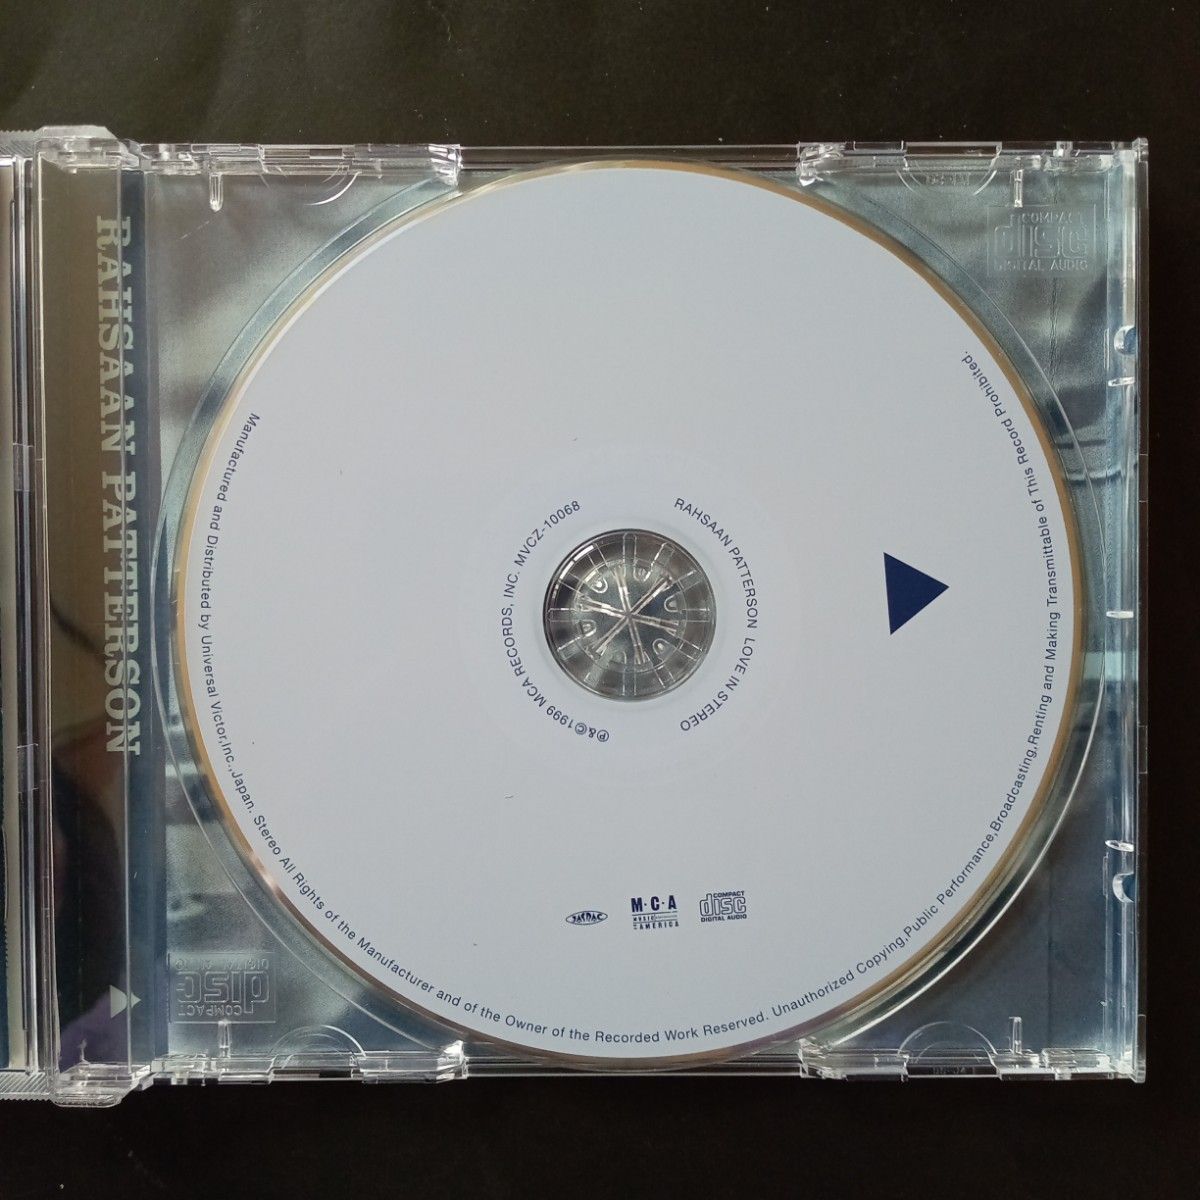 ♪ ラサーン・パターソン、「ラブ・イン・ステレオ」セカンド・アルバム。日本盤ボーナストラック入り。